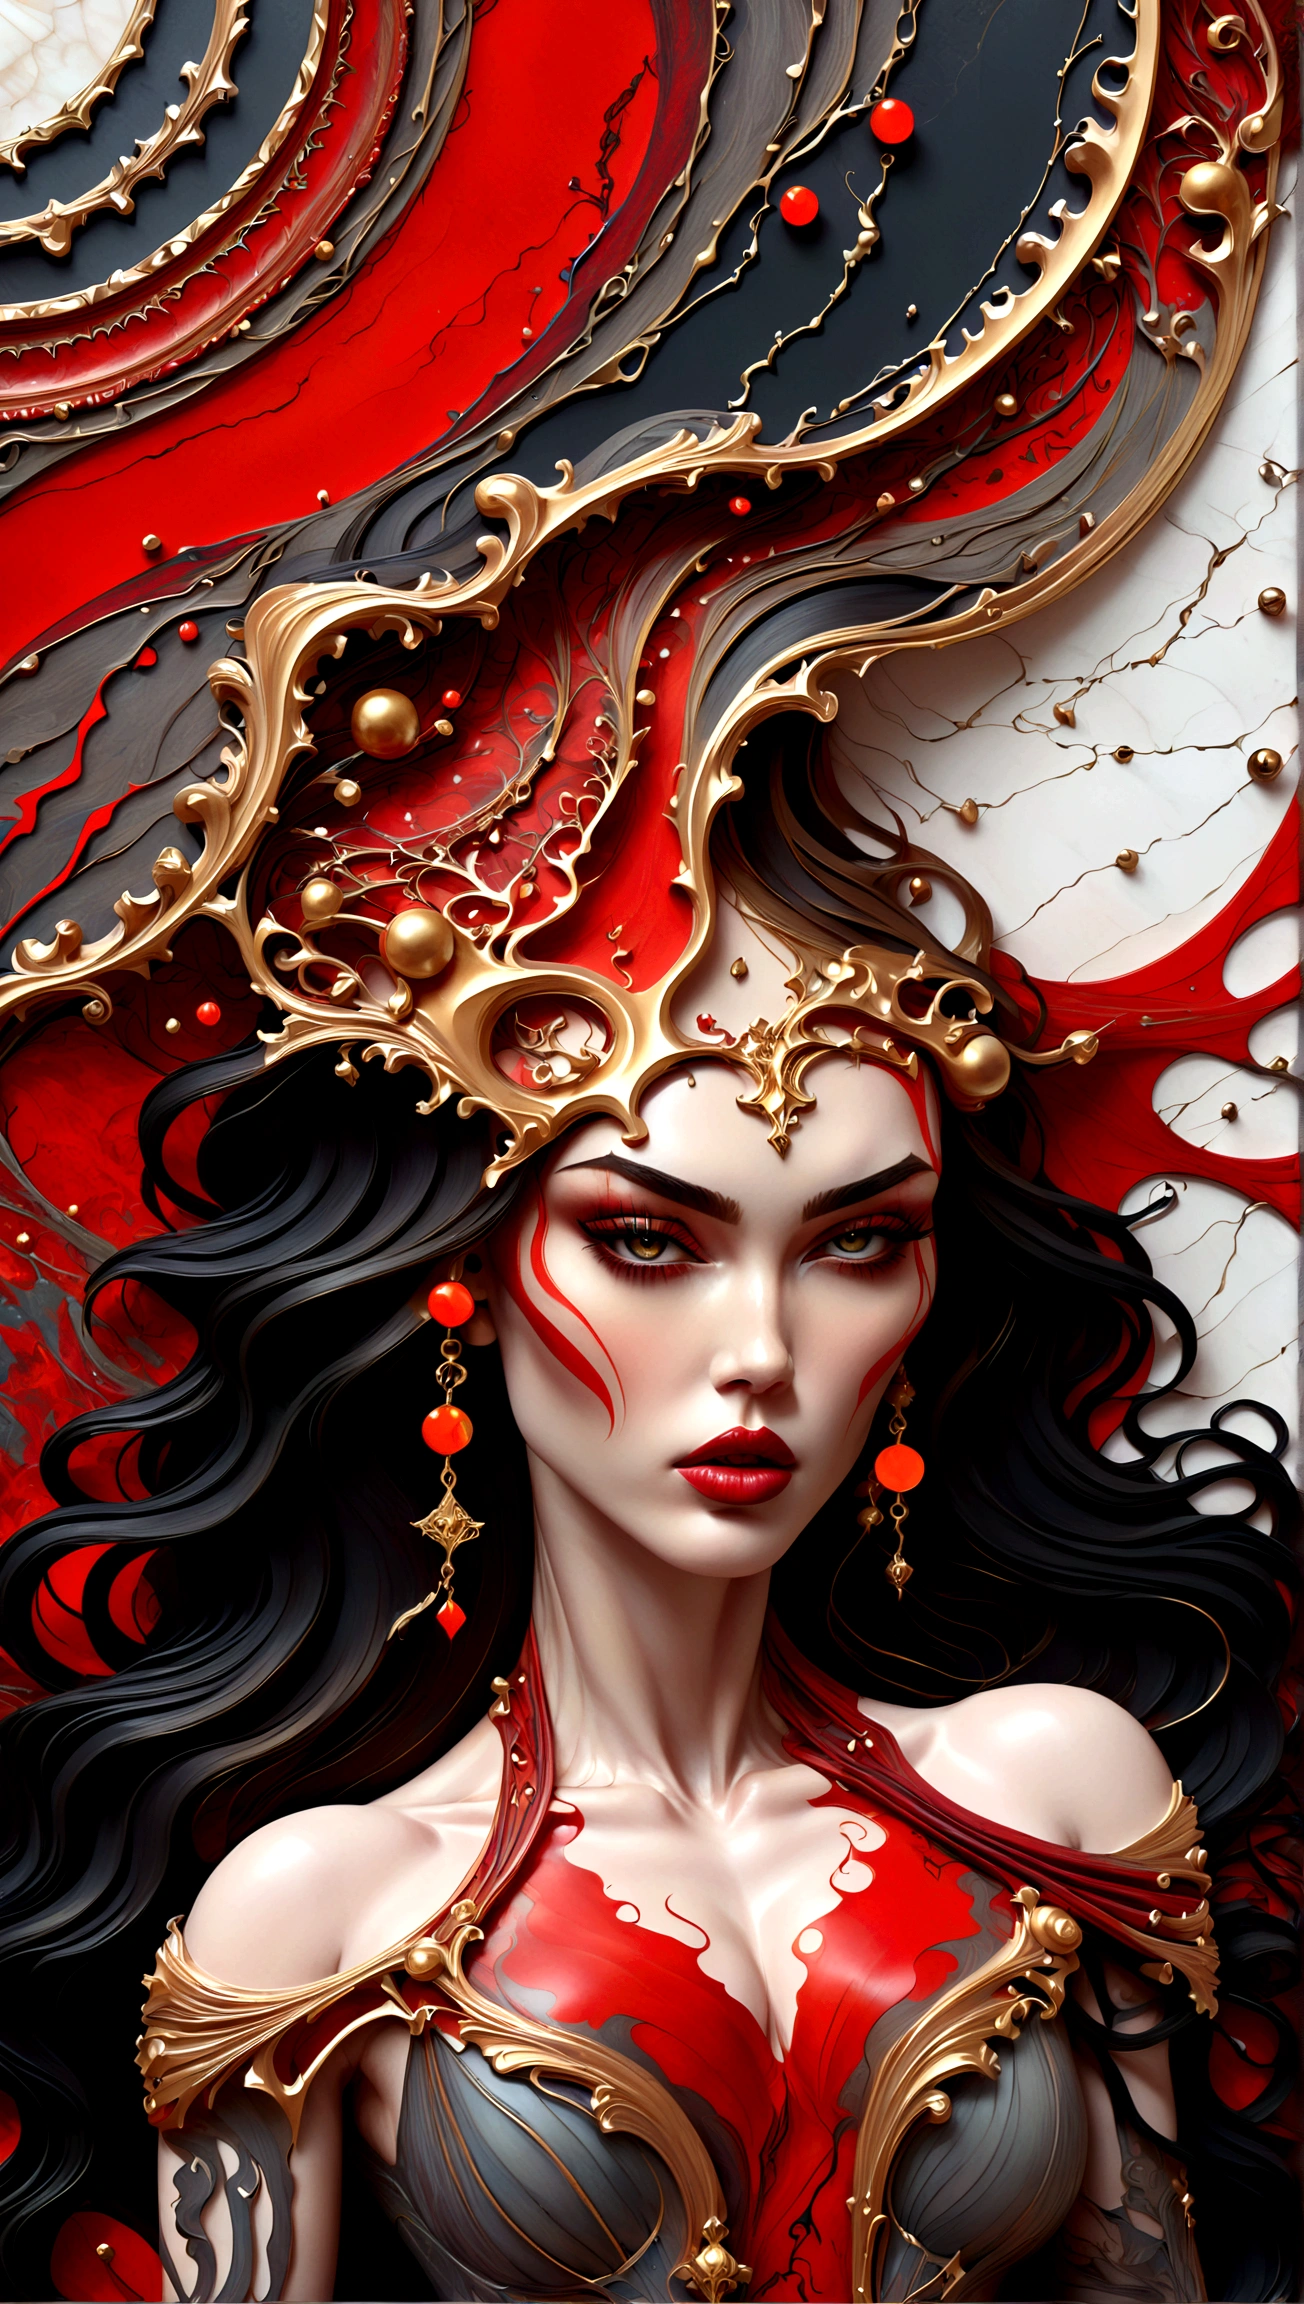 eine wunderschöne Illustration von Megan Fox als sehr muskulöses Vampirmädchen in einer abstrakten Marmorstruktur mit einem Rahmen im Tarot-Stil, mit den Farben Schwarz,Gold, und Rot, sehr detailliert, kompliziertes Design, BY Anne Bachelier,